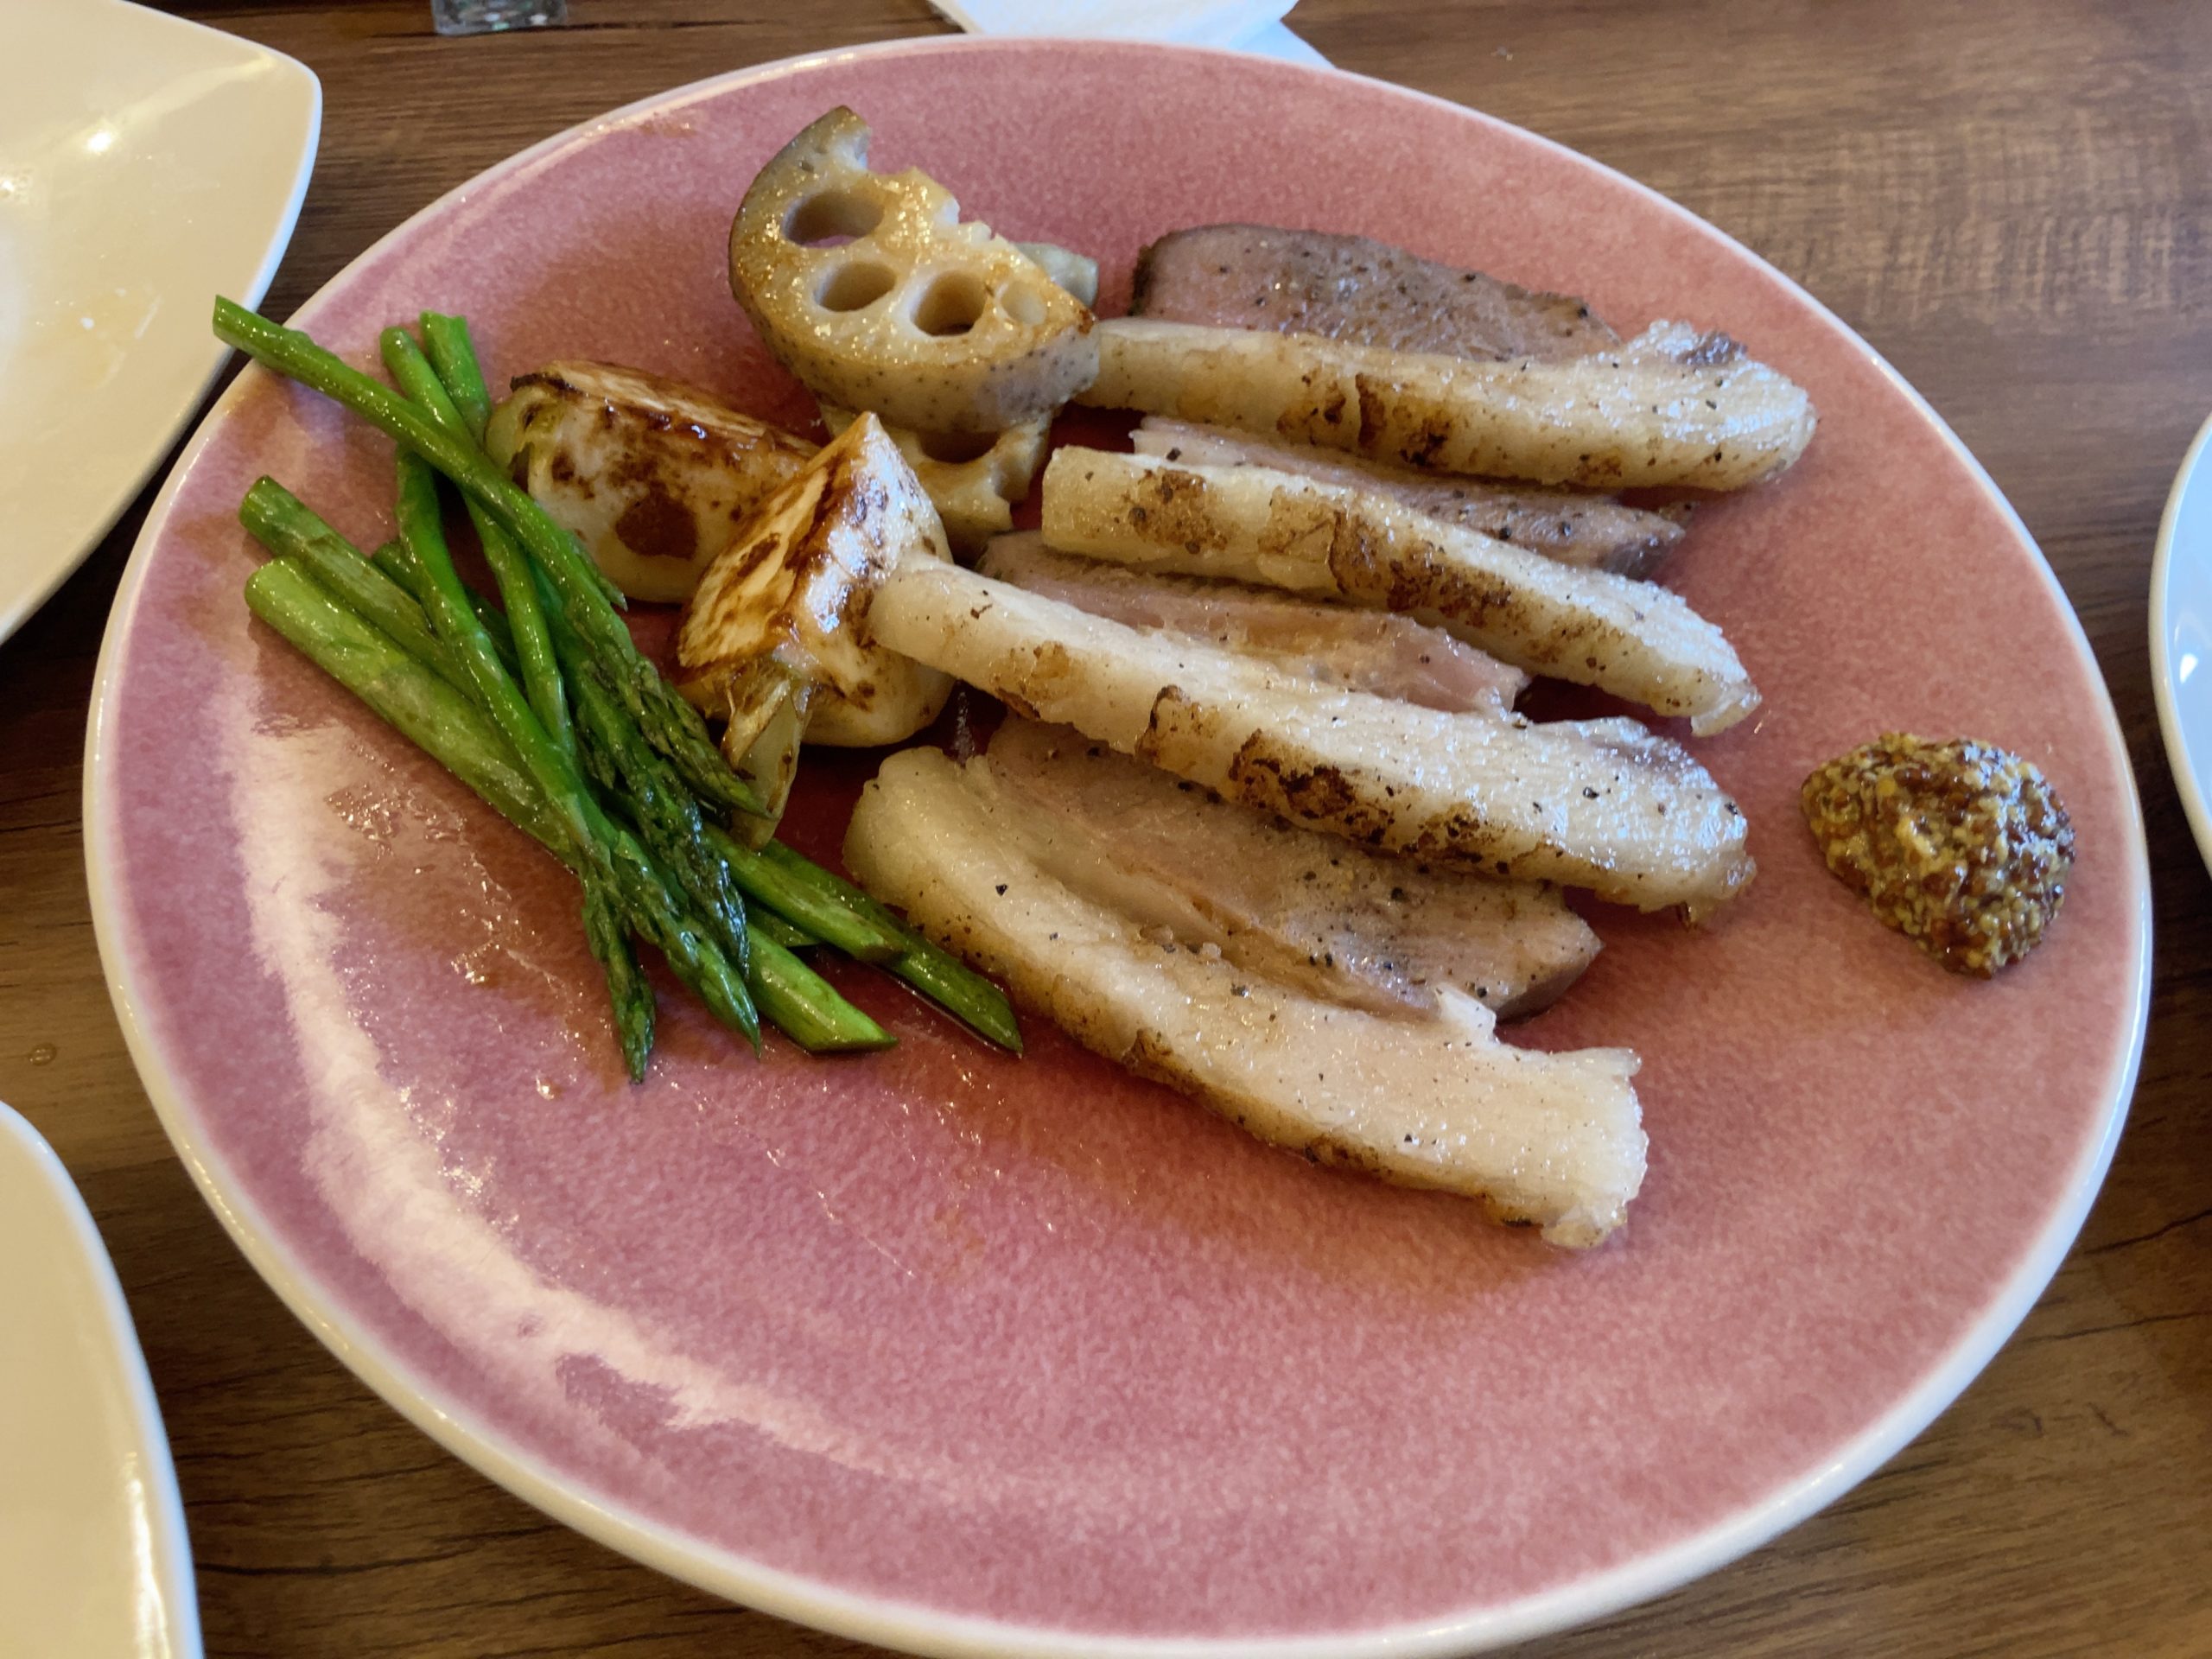 イベント告知:4/21(金)山菜と猪肉@西麻布ワールドネイチャーファーム